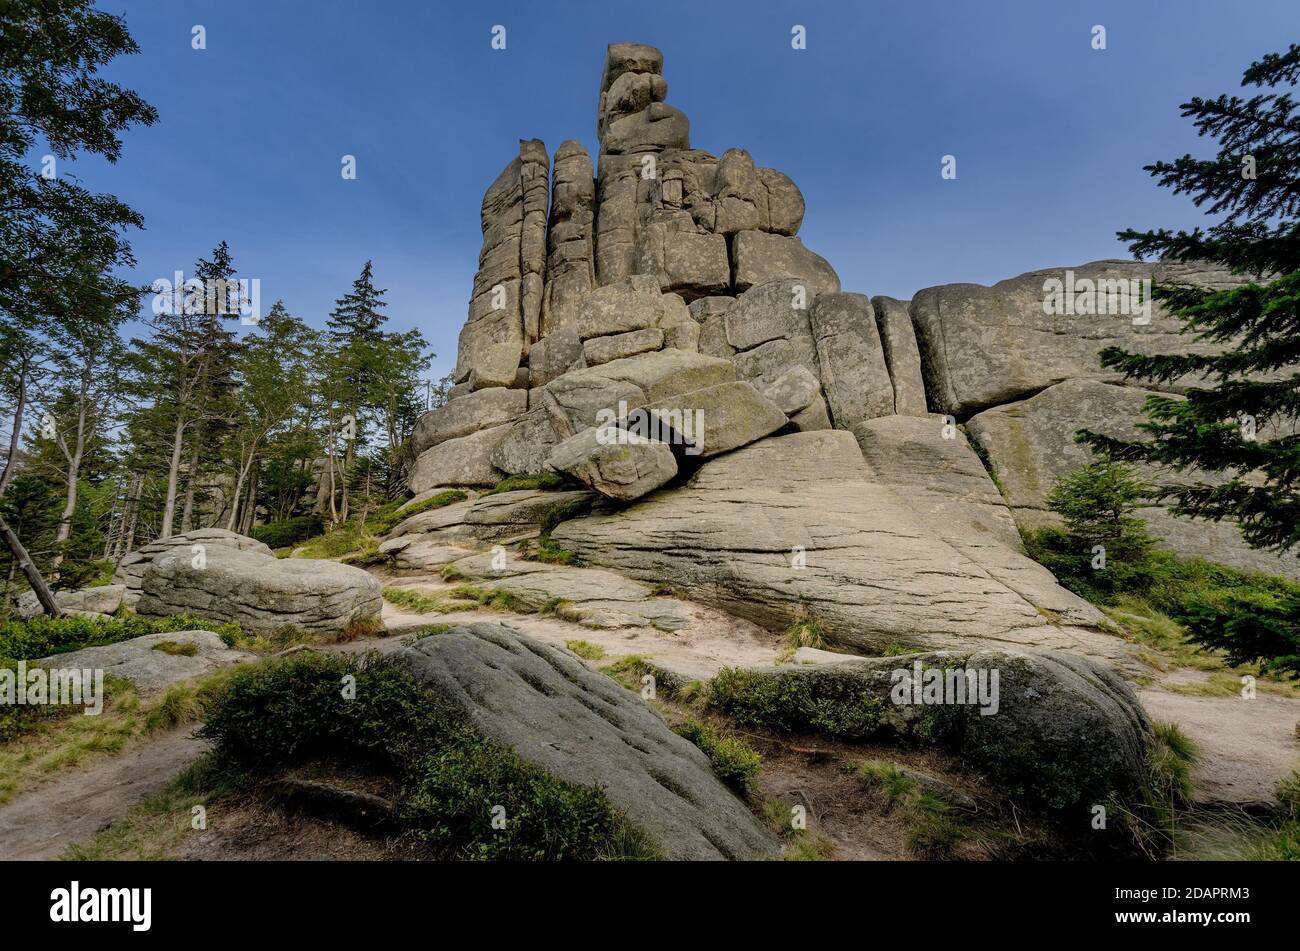 The Pilgrims rock formation (pol. Pielgrzymy, ger. Dreisteine), Karkonosze mountain range (Giants Mountains). Poland, Lower Silesia province. Stock Photo